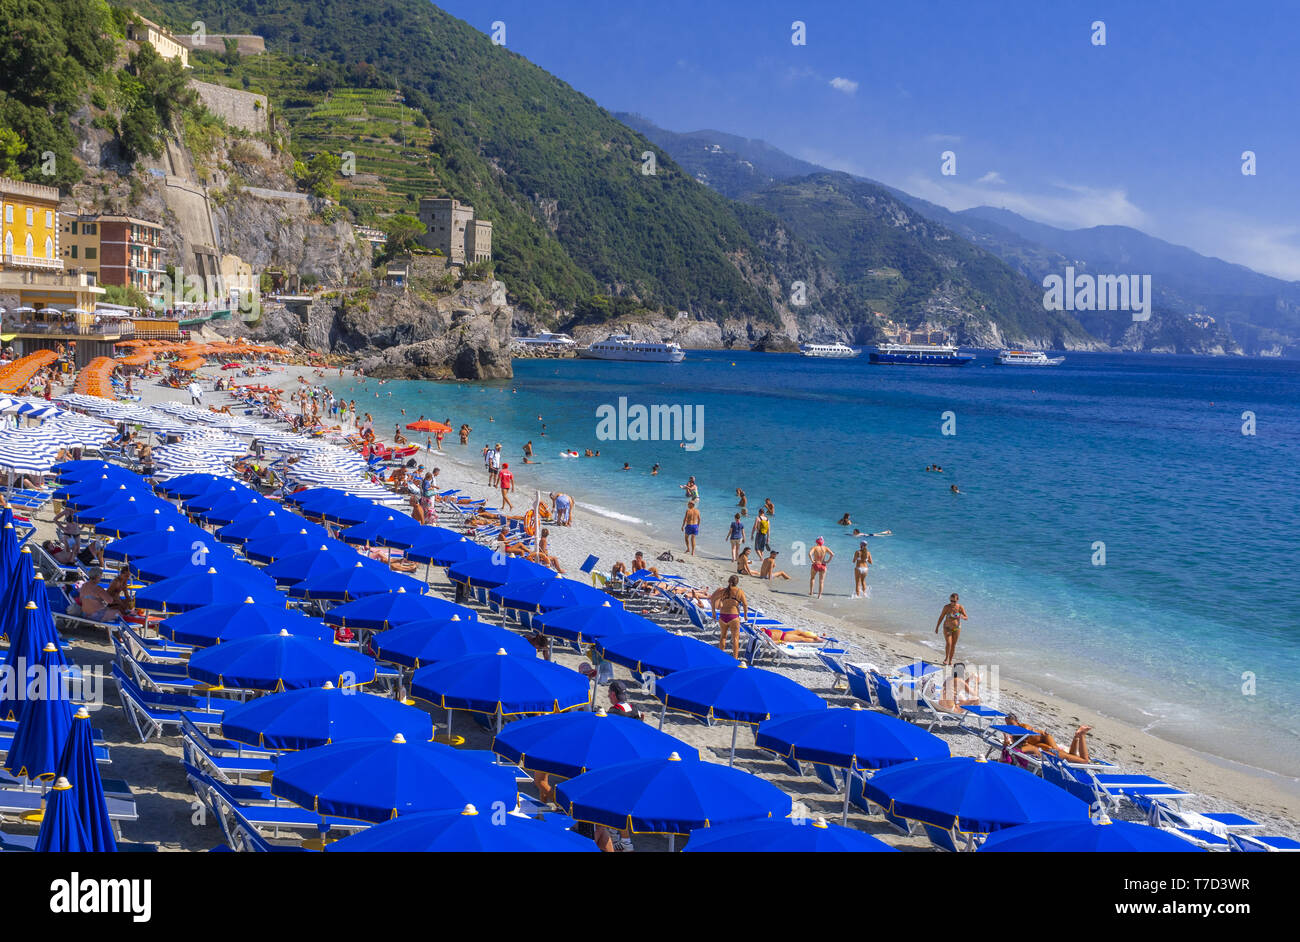 Beach of Monterosso al Mare, Italy Stock Photo